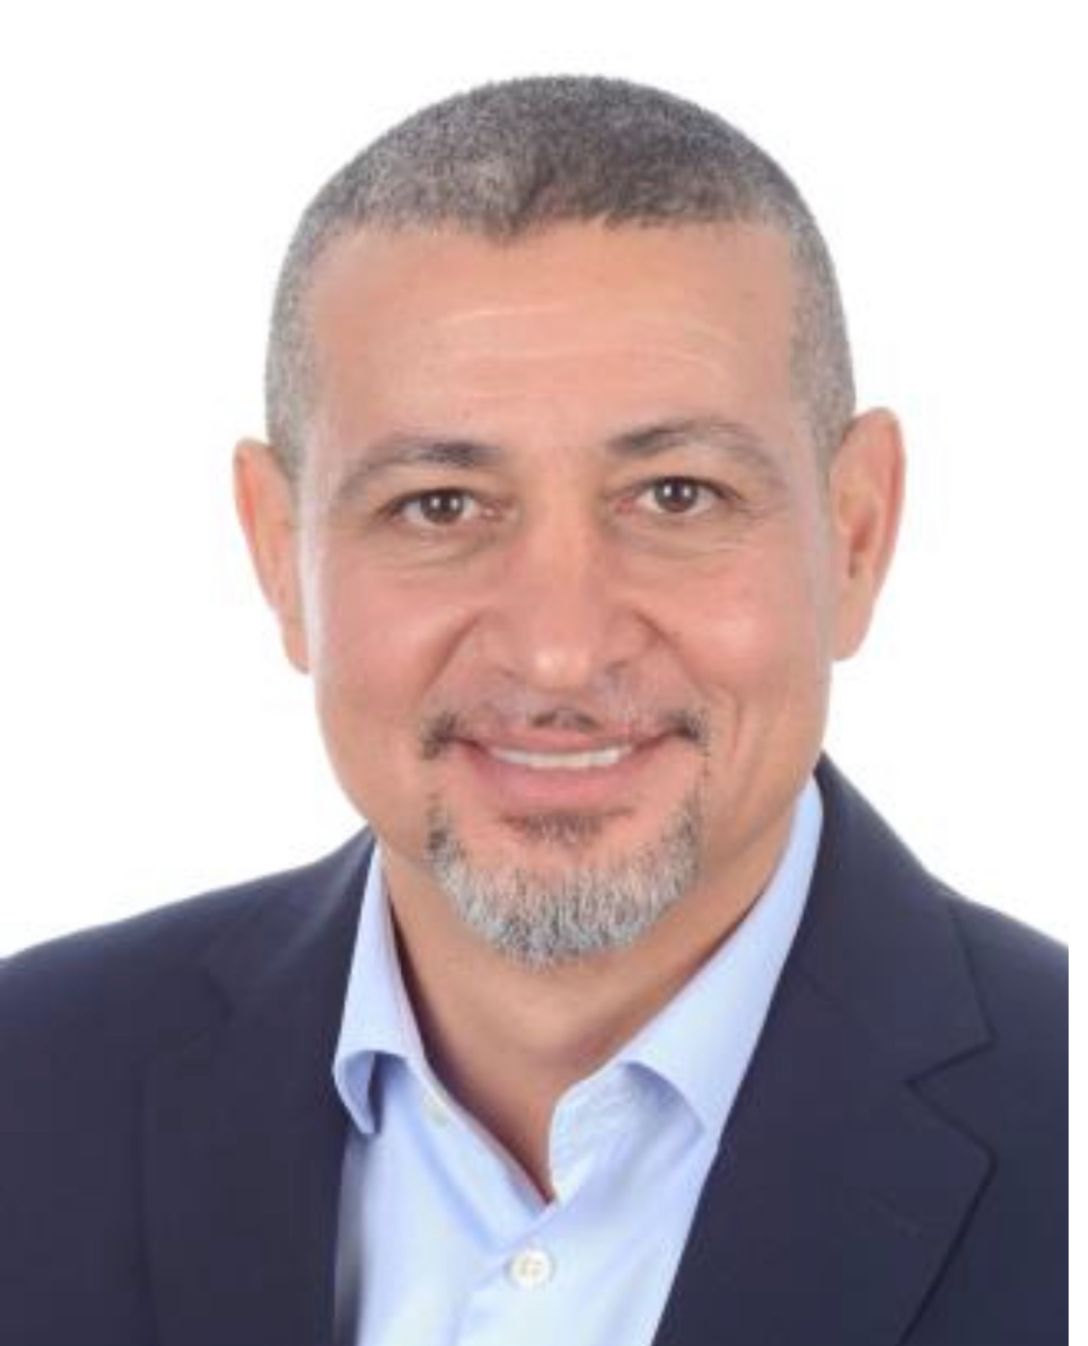 خالد فتحي رئيسا تنفيذيا لعمليات مجموعة شرم دريمز للاستثمار السياحي